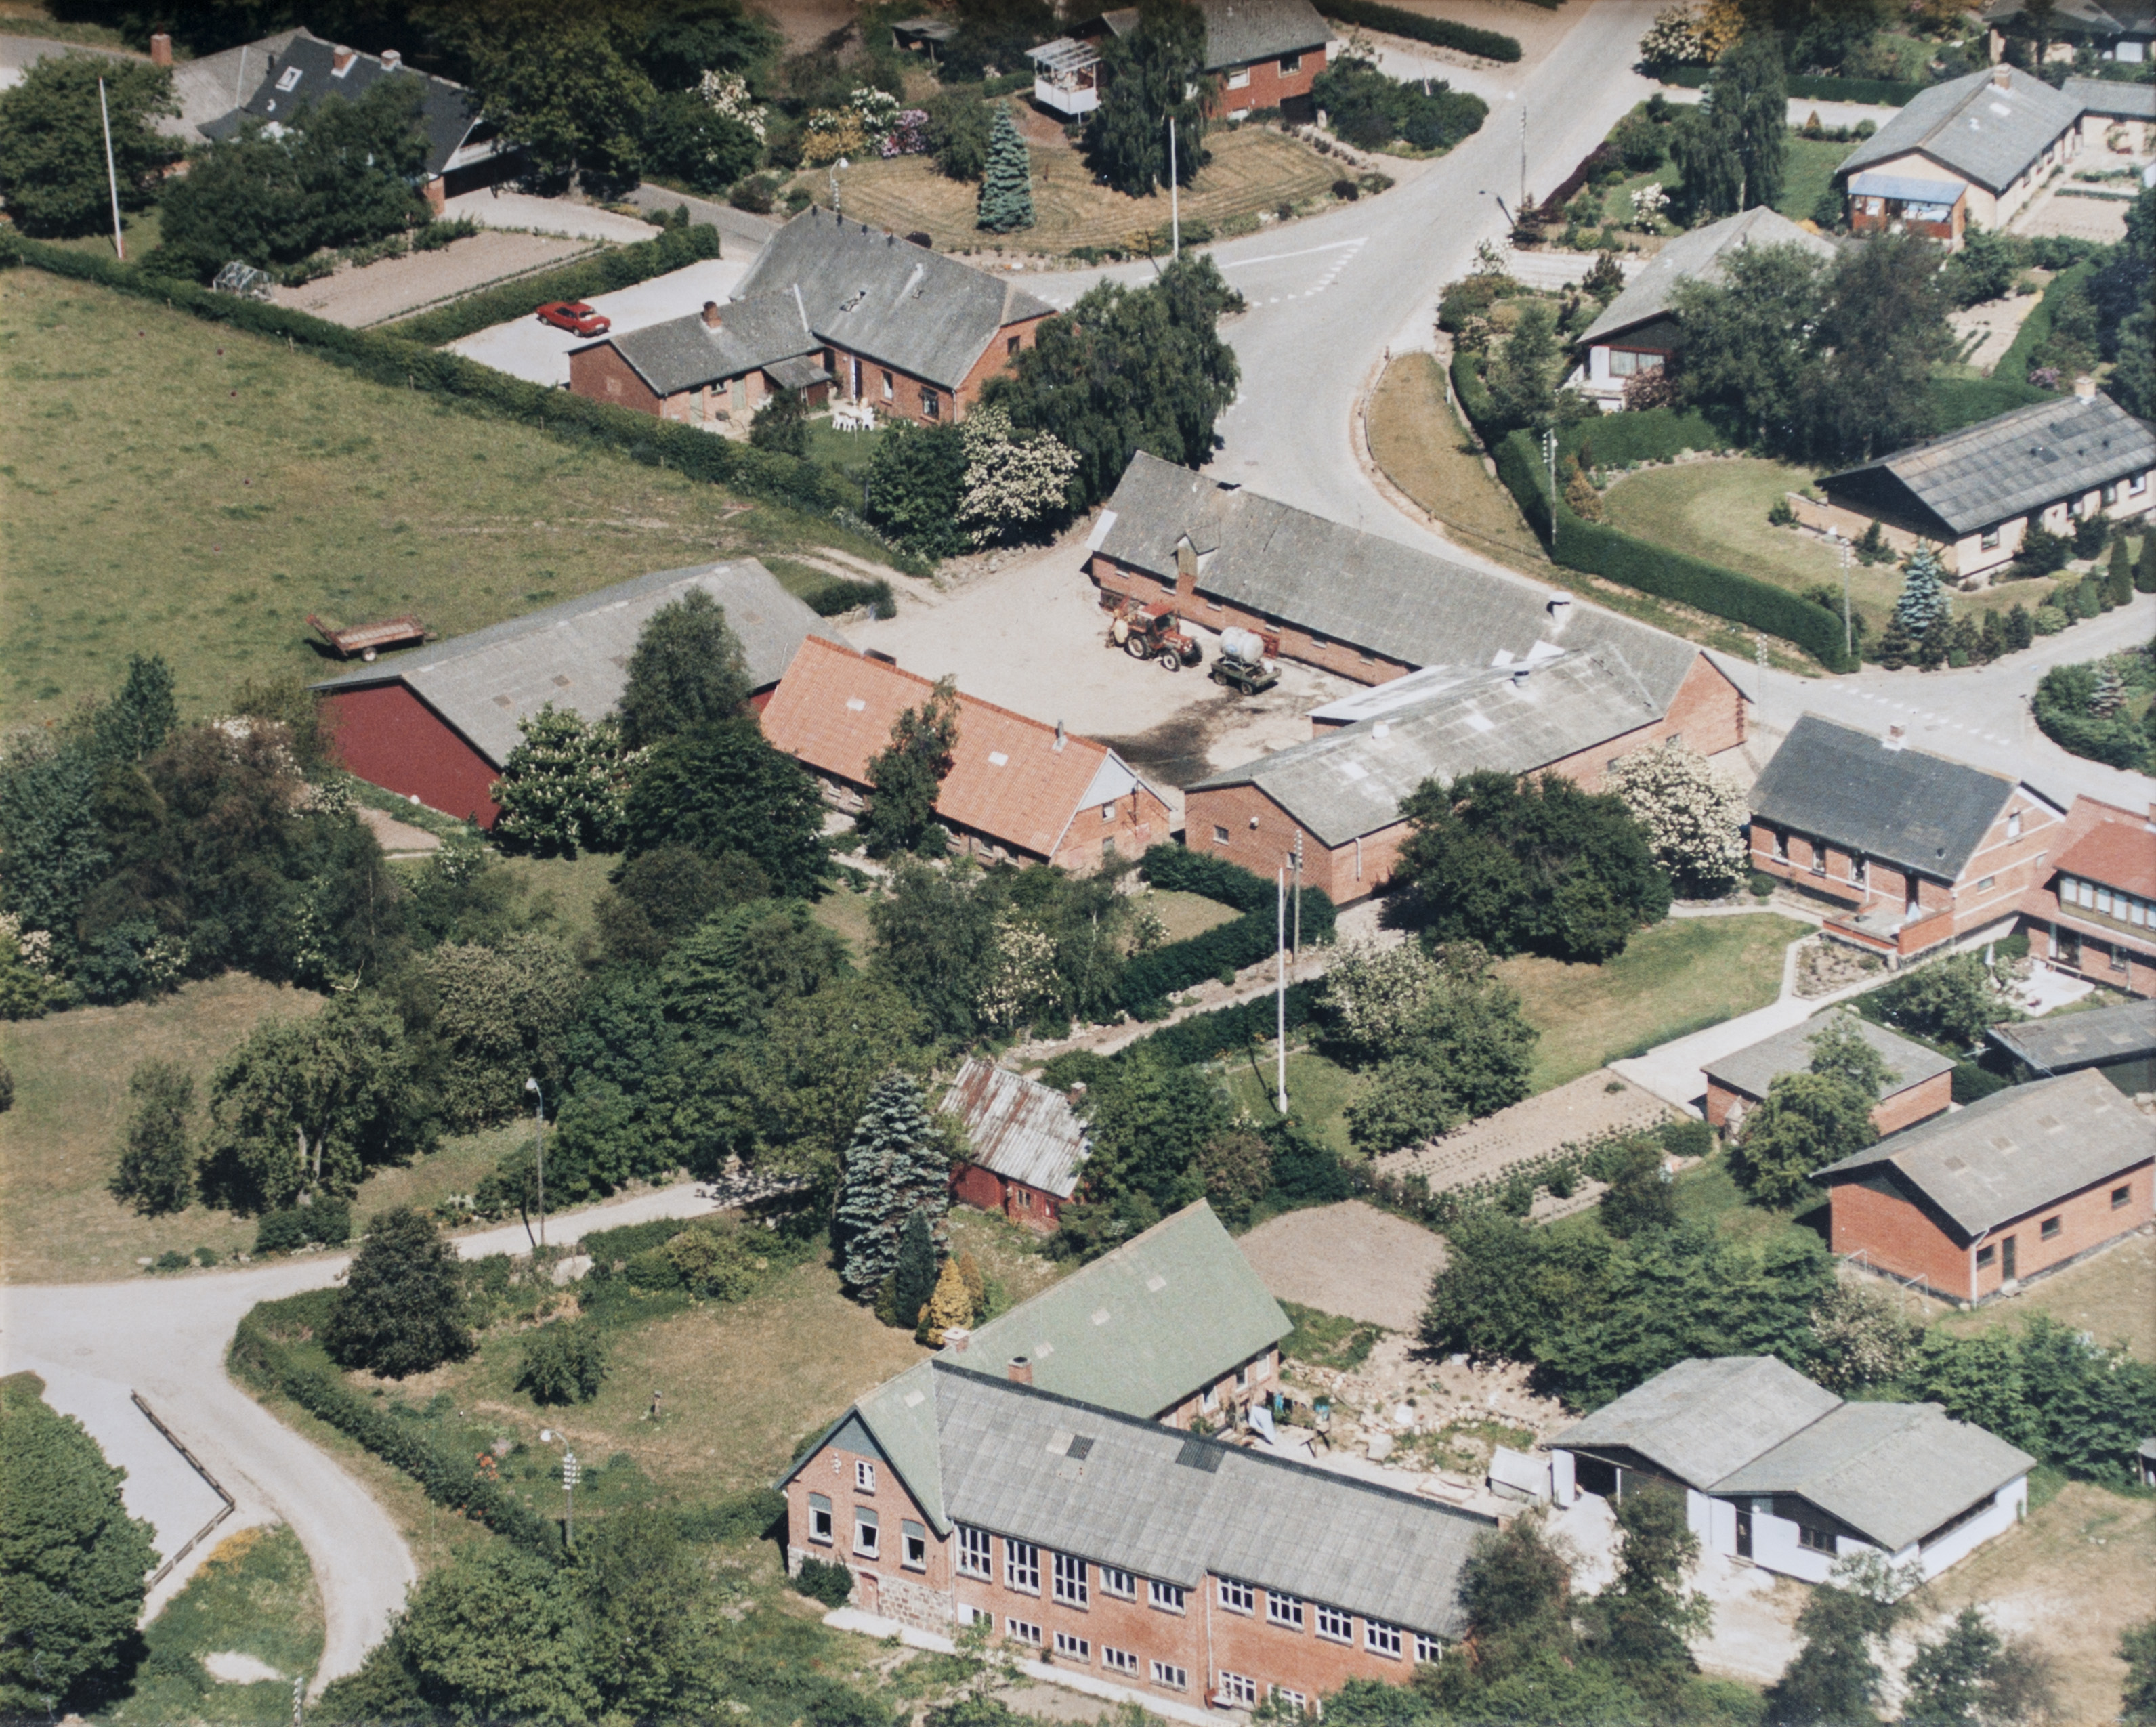 1989 - Læsten Skole nederst i billedet - set fra syd.